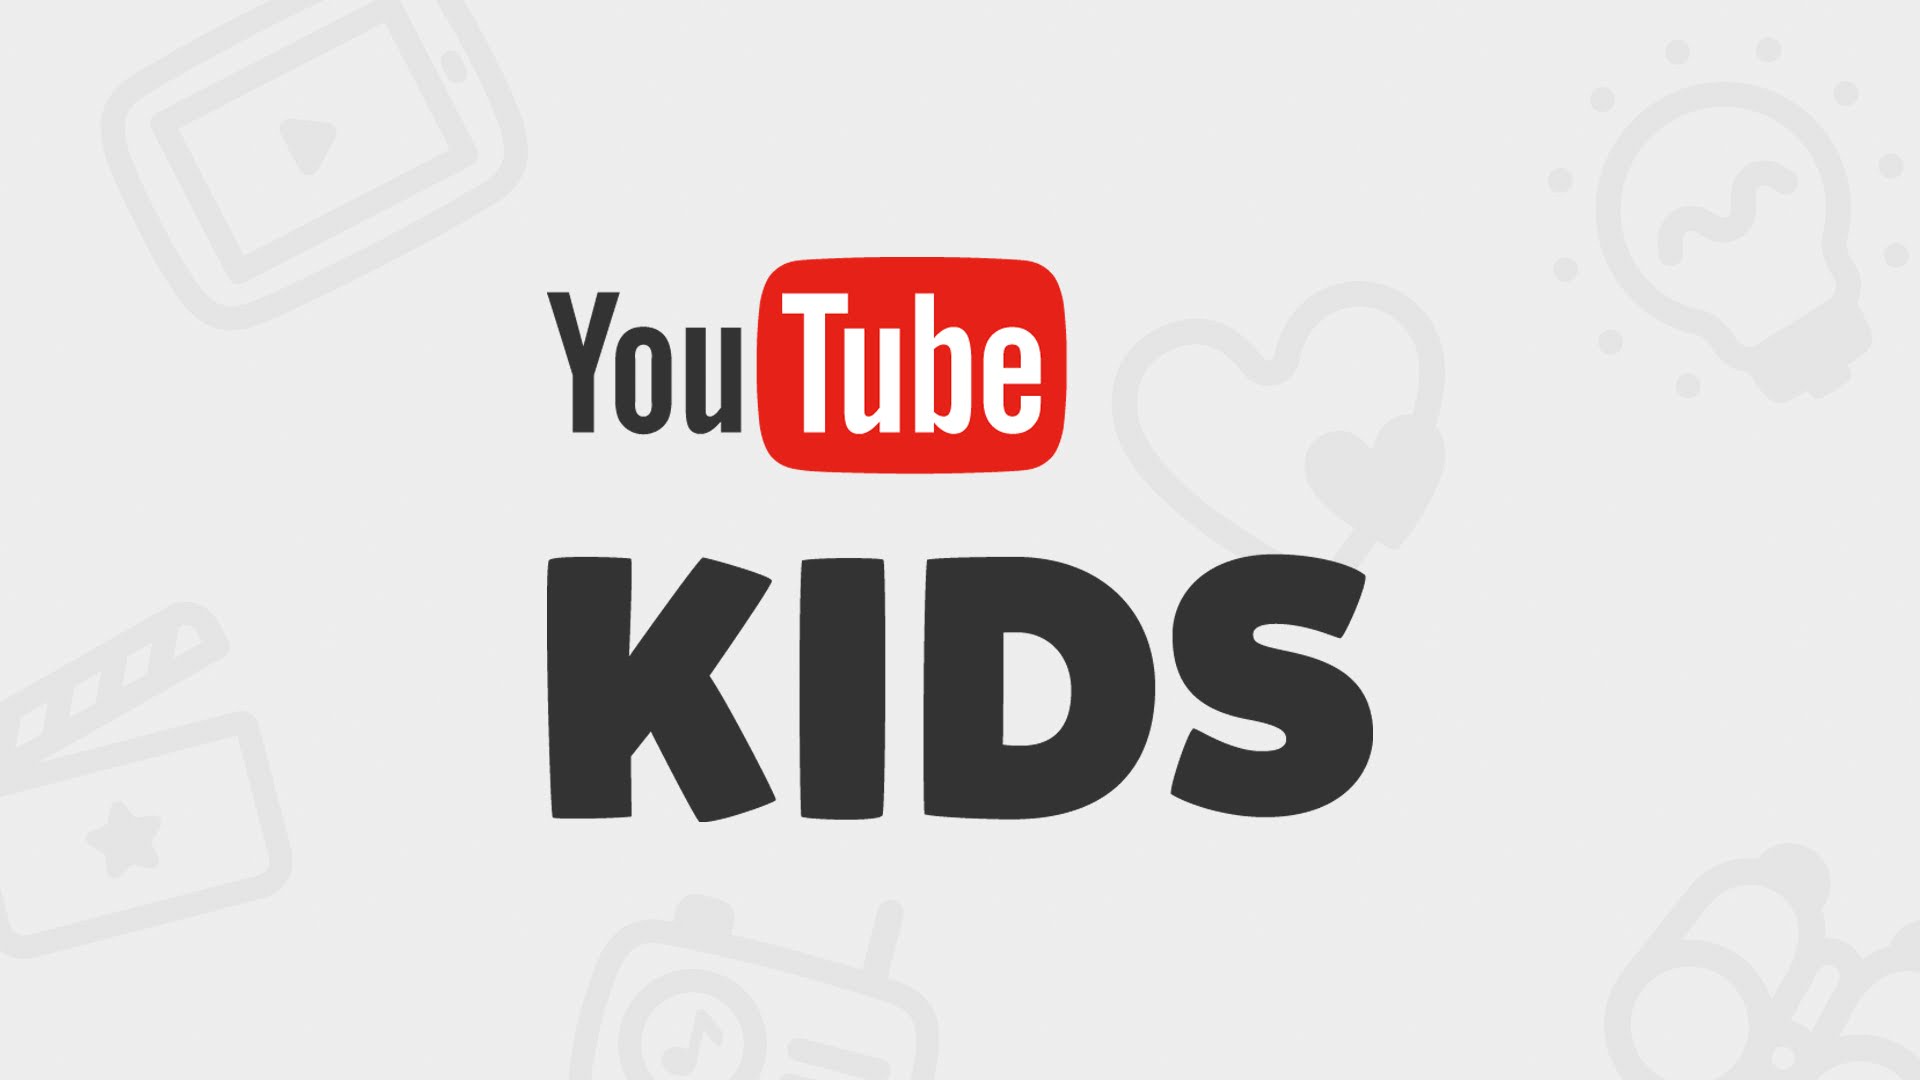 انطلاق تطبيق YouTube Kids بالشرق الأوسط وشمال أفريقيا بالعربية